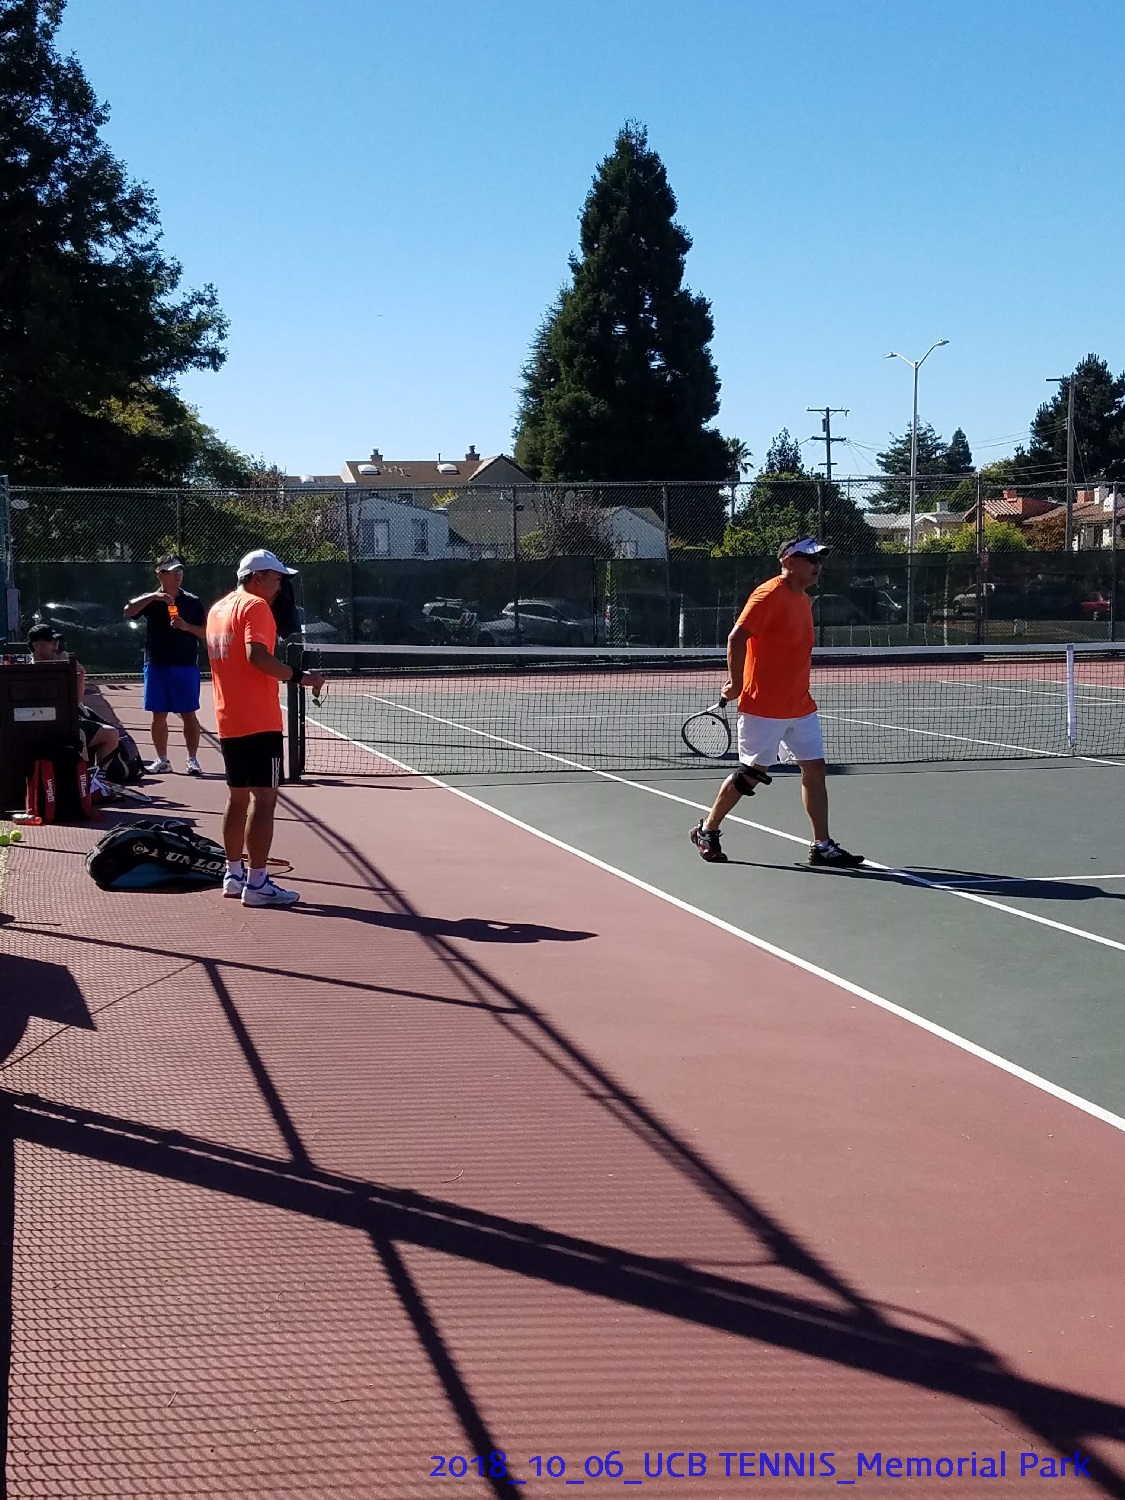 resized_2018_10_06_UCB Tennis at Memorial Park_111812.jpg